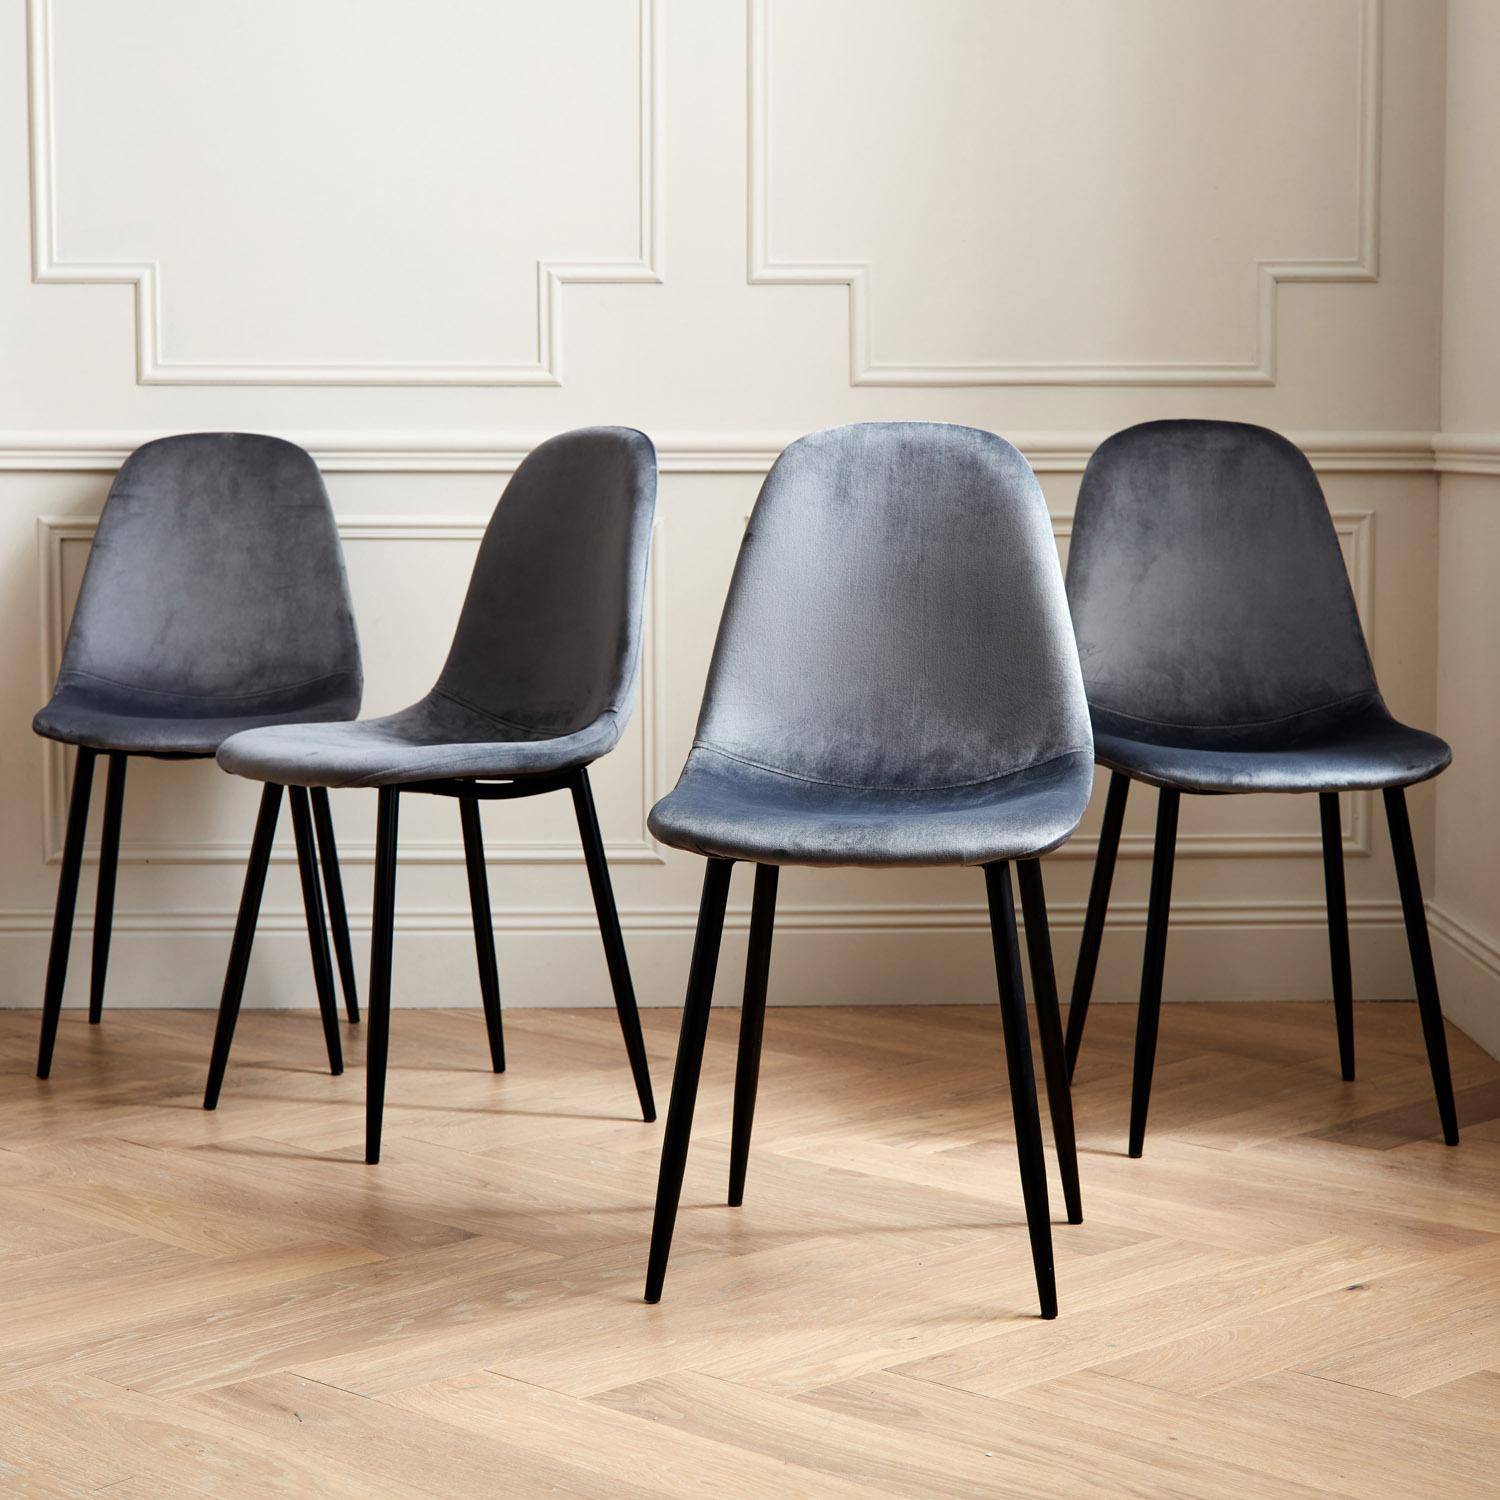 Set van 4 stoelen - Bombay - velours stoelen, metalen poten, vintage, comfortabel, design, stalen onderstel, B44xD53 x H88cmn - Donkergrijs Photo1